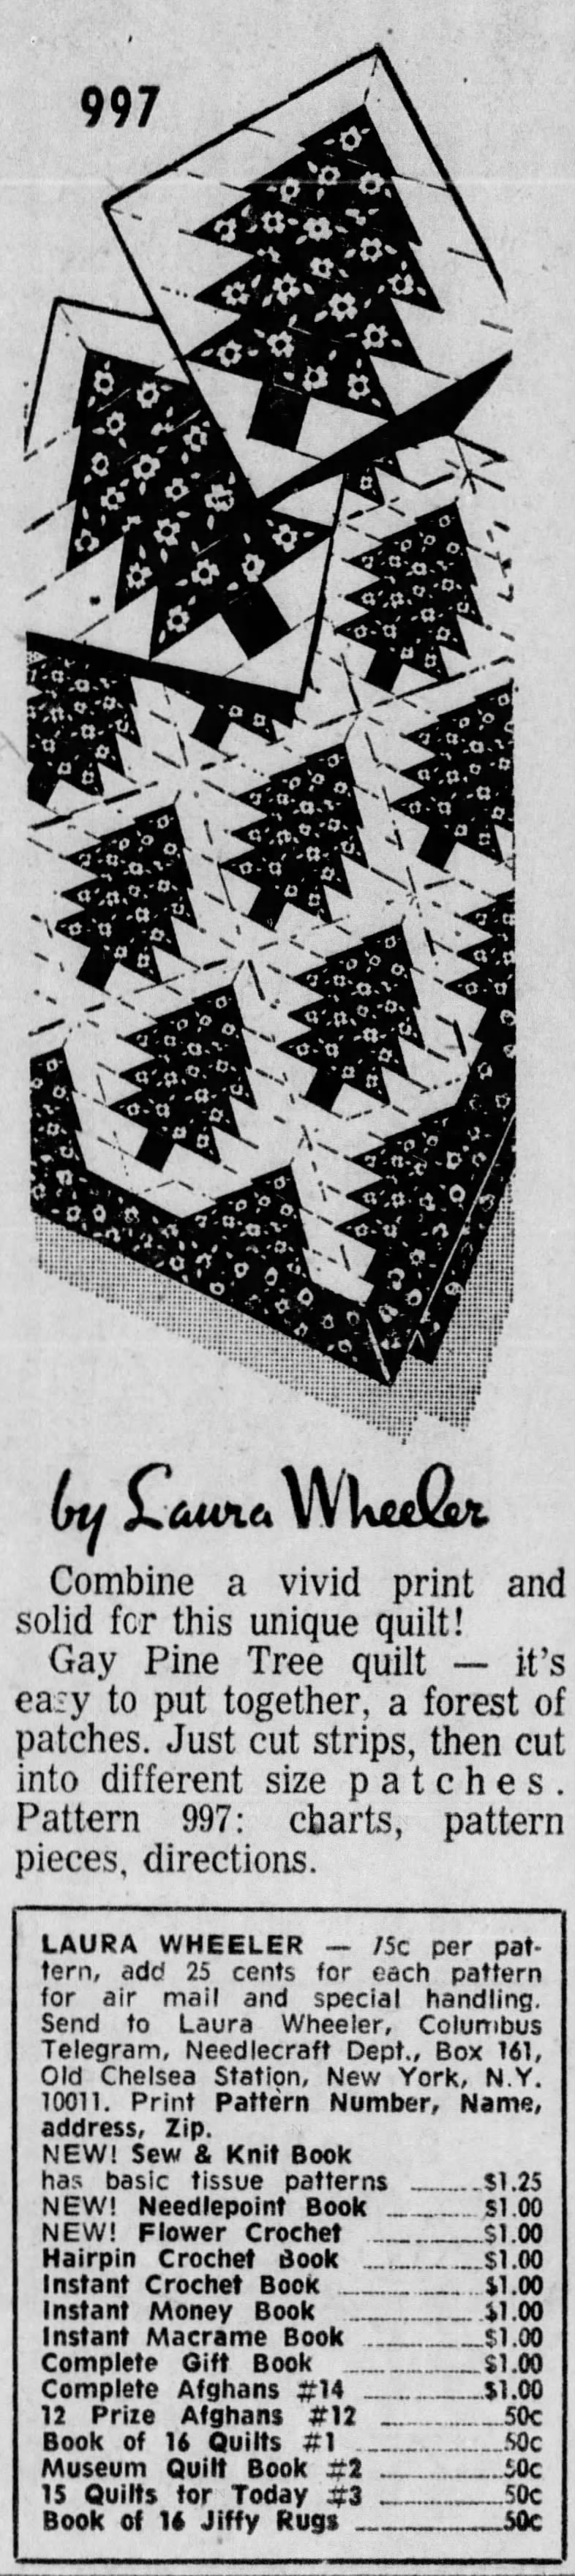 Jan 25, 1974, Laura Wheeler Pine Tree quilt pattern, Columbus Telegram